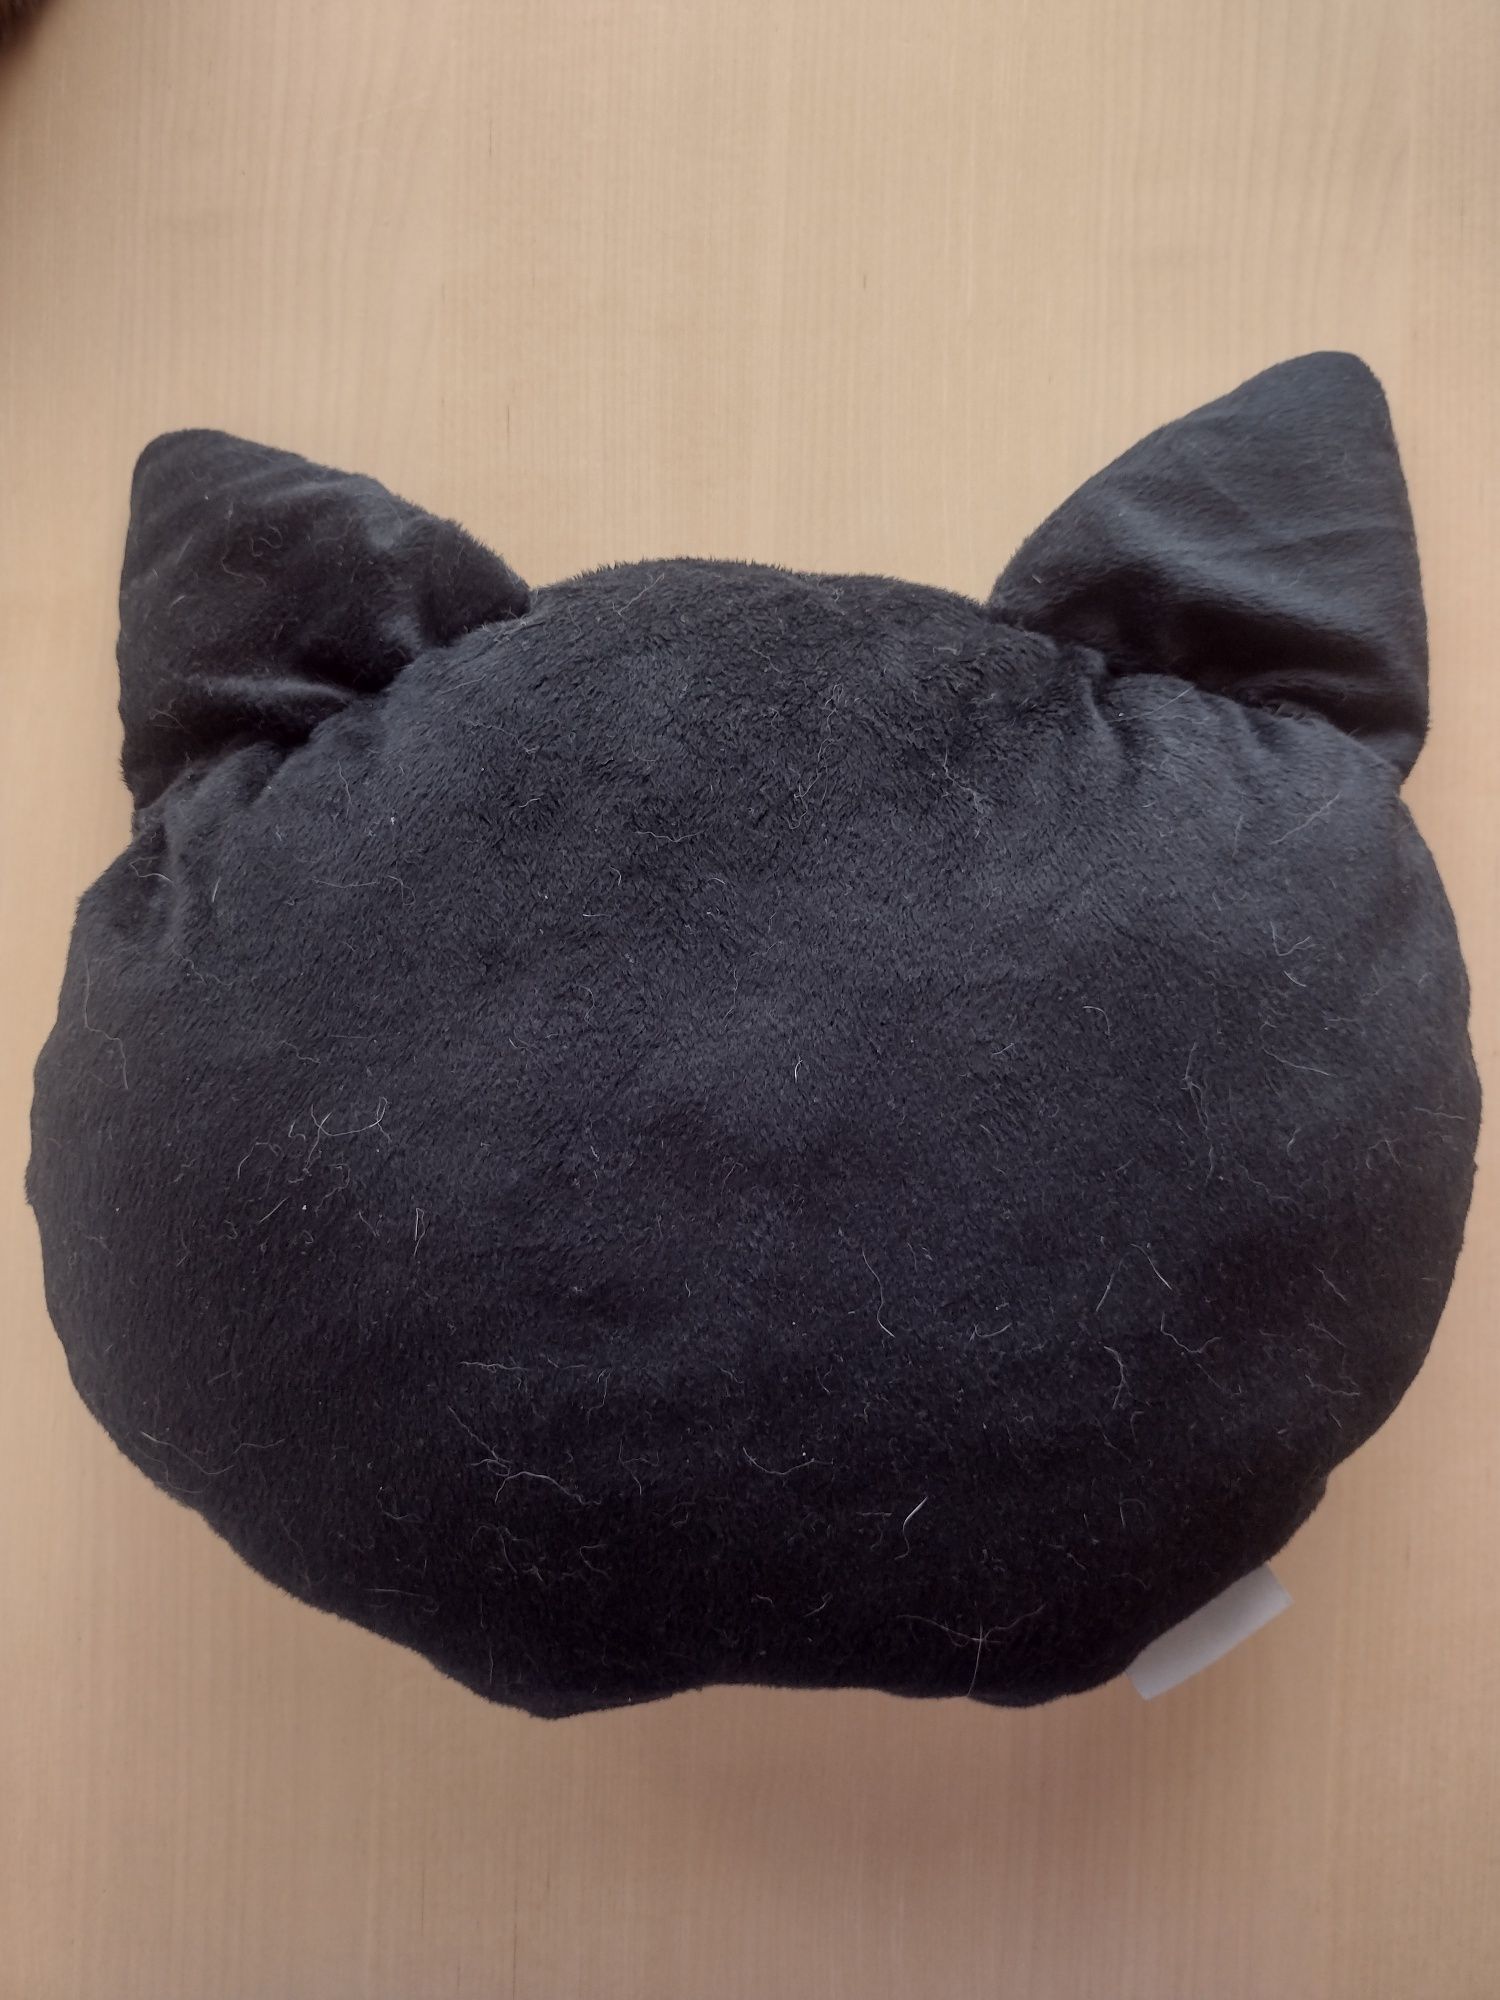 Poduszka czarny kot (kot z wąsem)